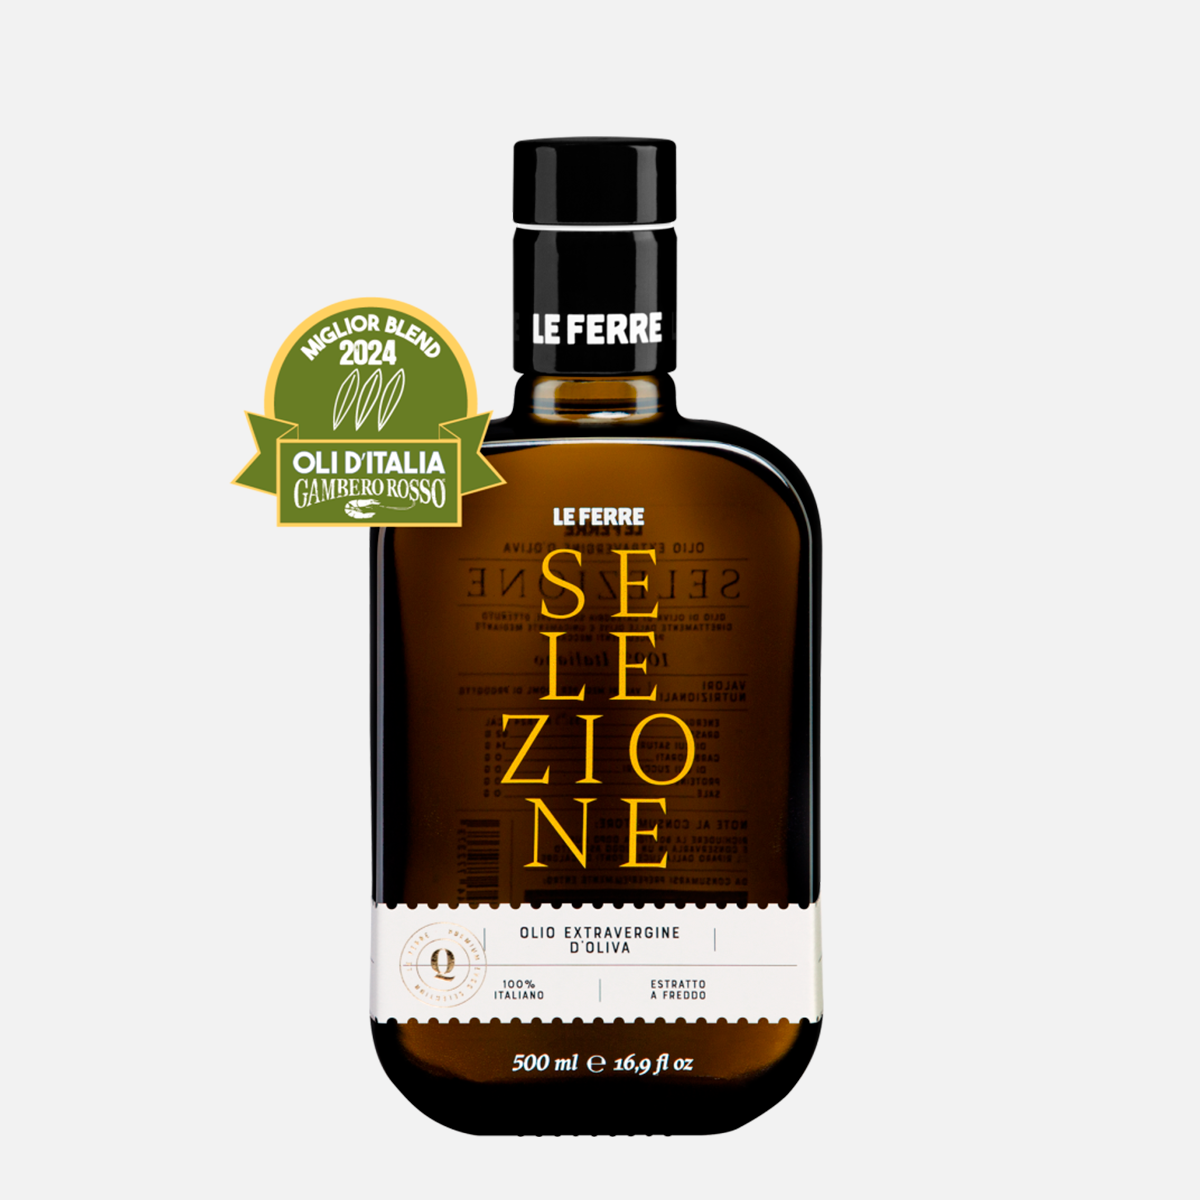 Le Ferre "Selezione" EVO oil